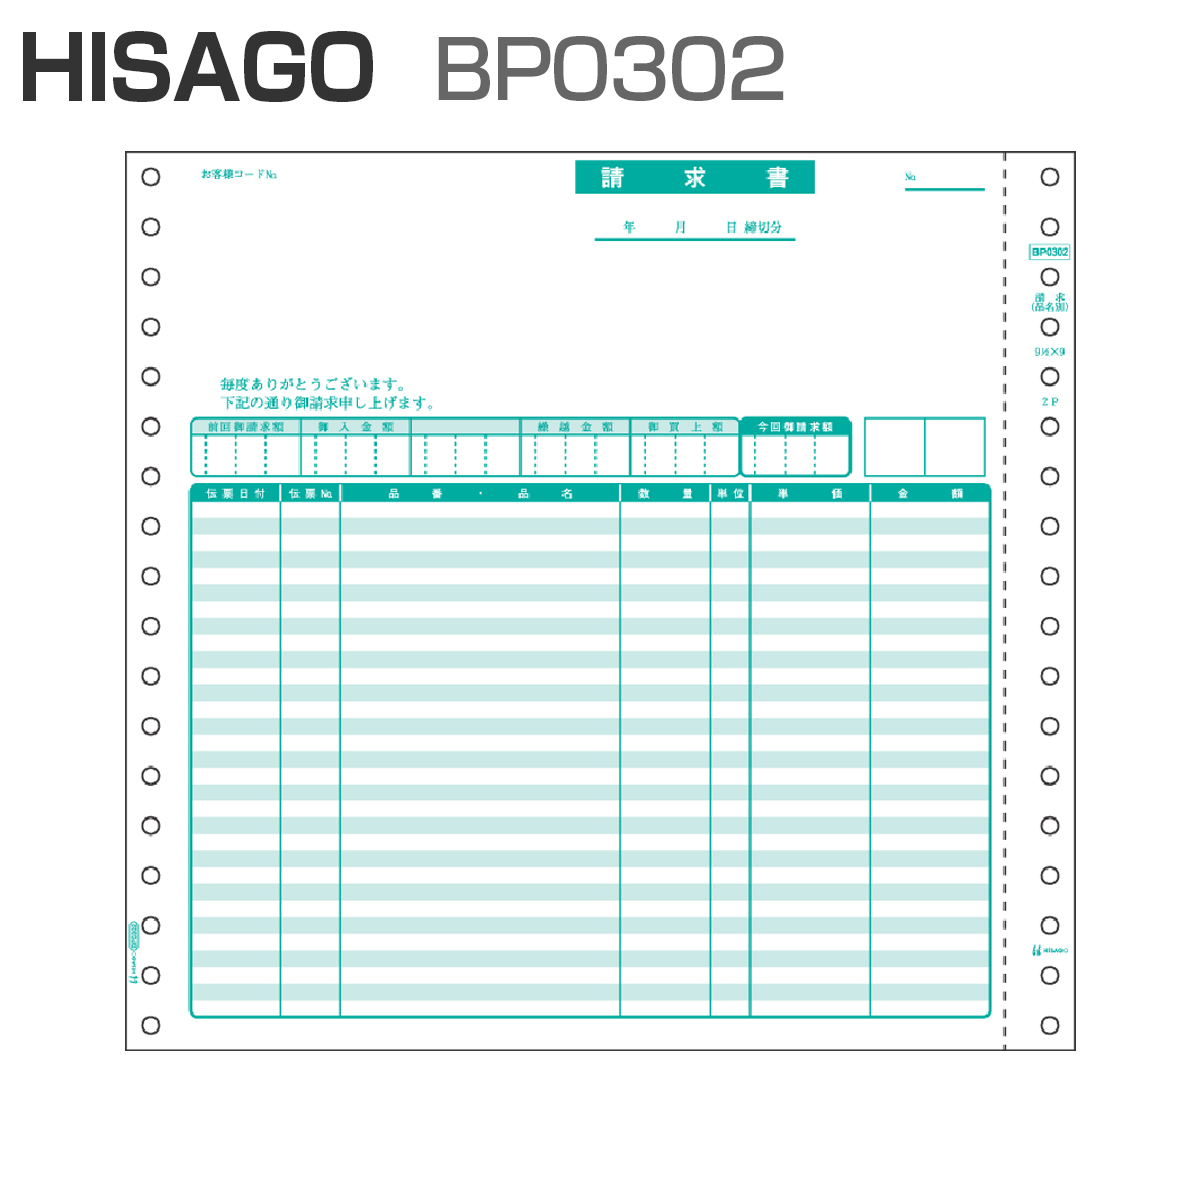 ヒサゴ BP0302 ベストプライス版 請求書 【品名別】 2P (500セット)